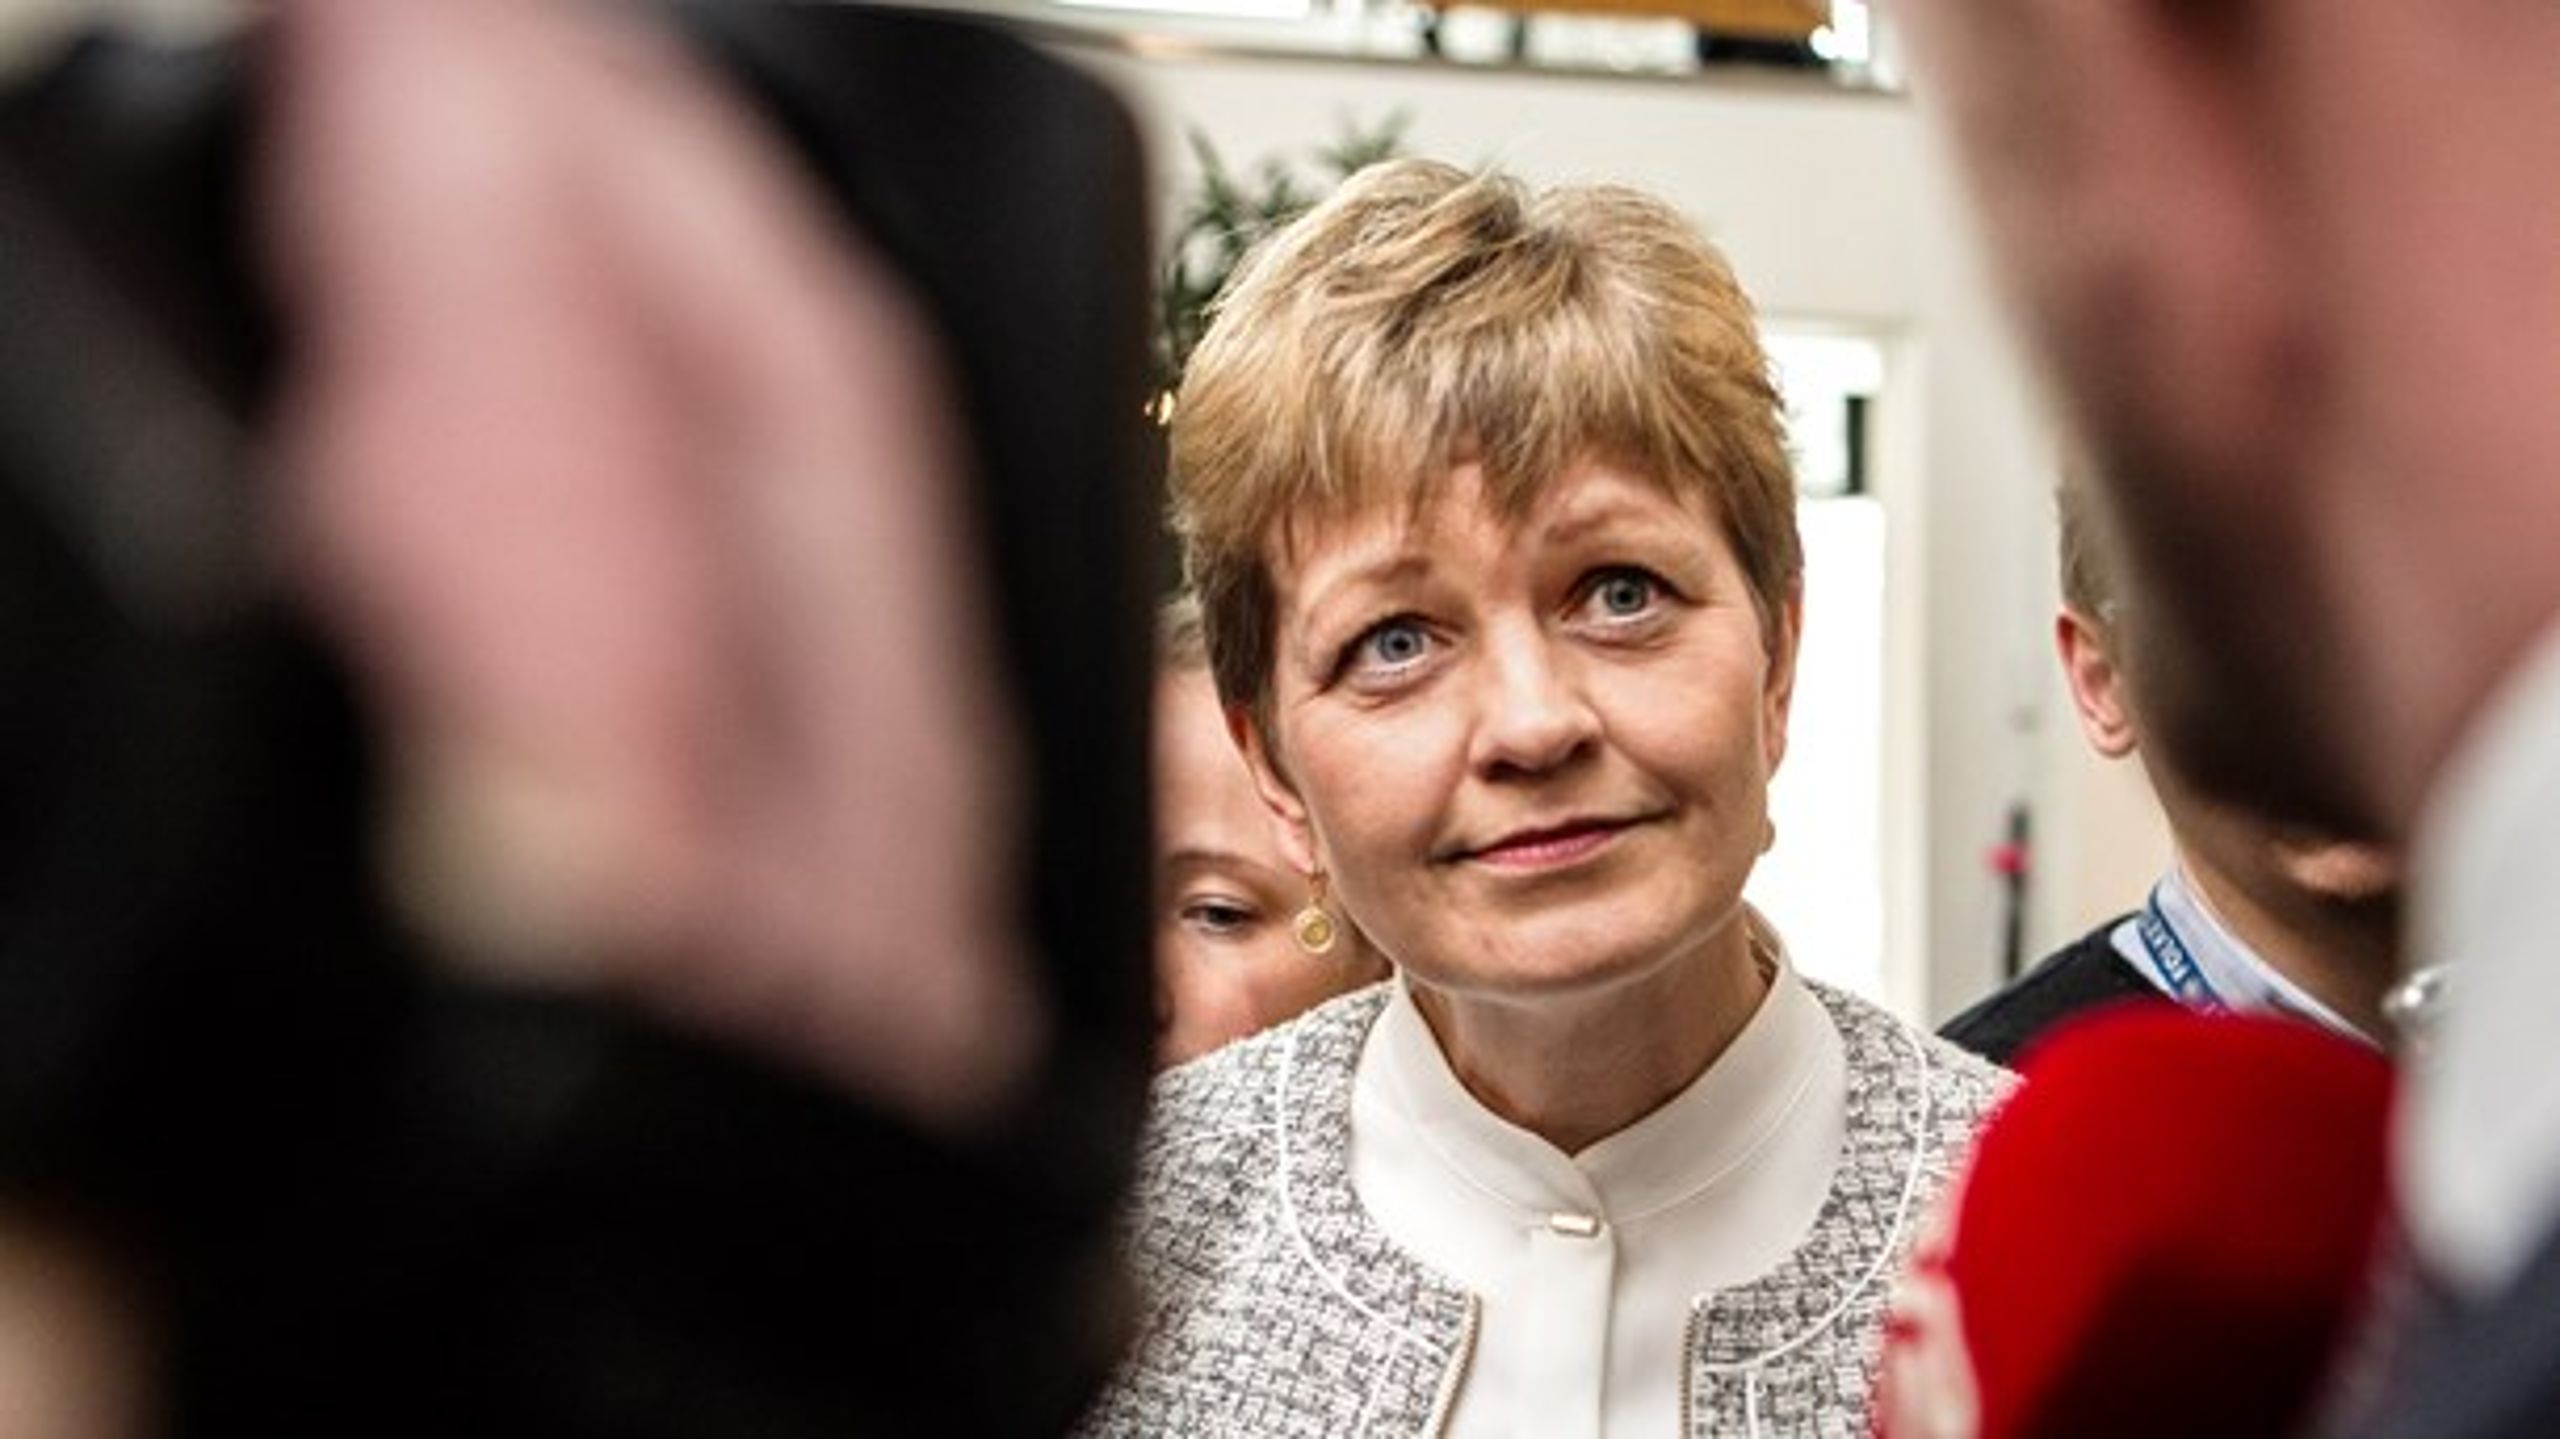 Tidligere miljøminister Eva Kjer Hansen (V)&nbsp;kom mange gange i skudlinjen i det forgange år. Til sidst måtte hun gå af, efter Konservative udtrykte mistillid.